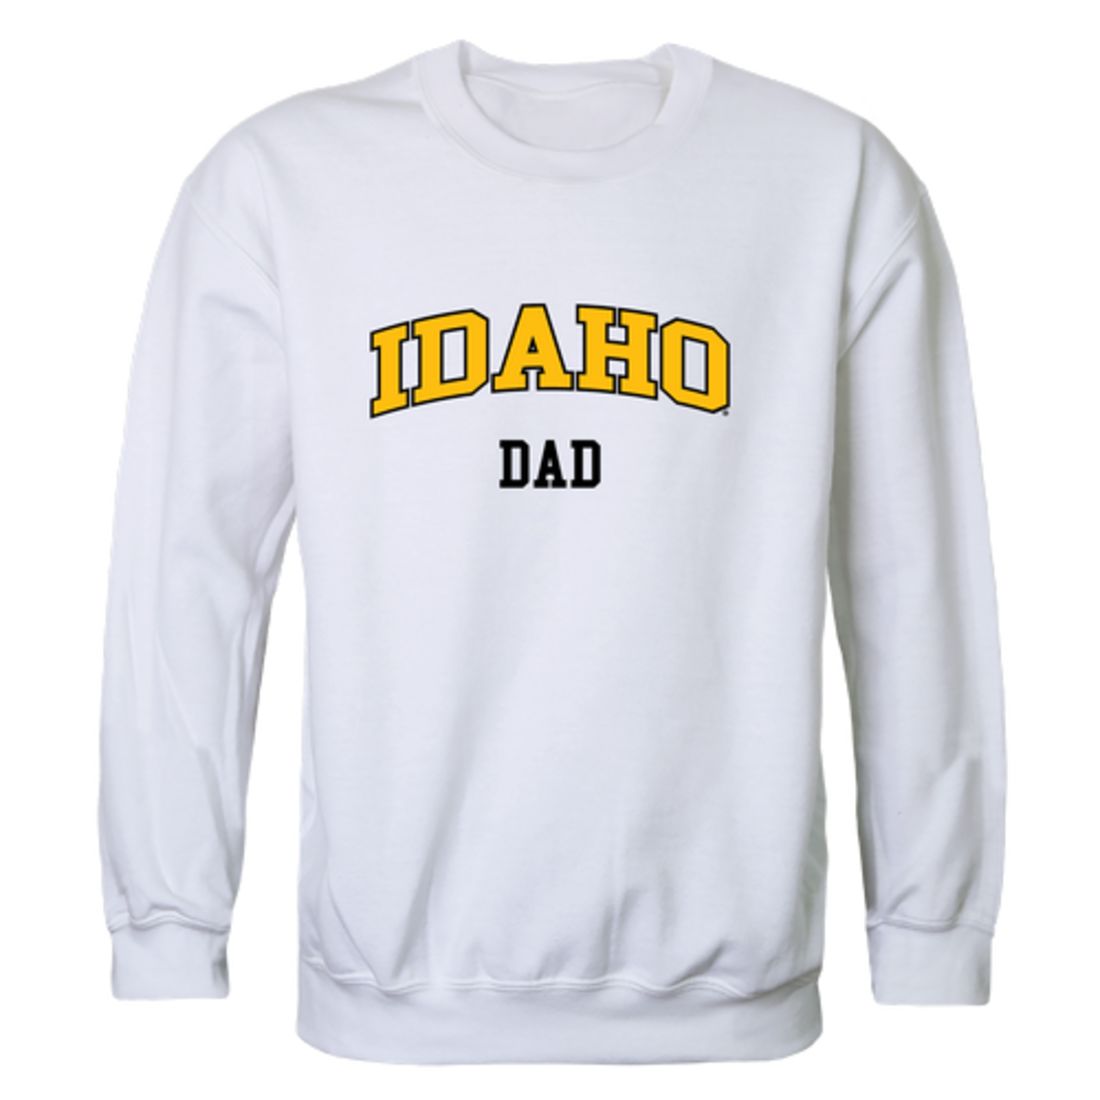 University of Idaho Vandals Dad Fleece Crewneck Pullover Sweatshirt Black-Campus-Wardrobe